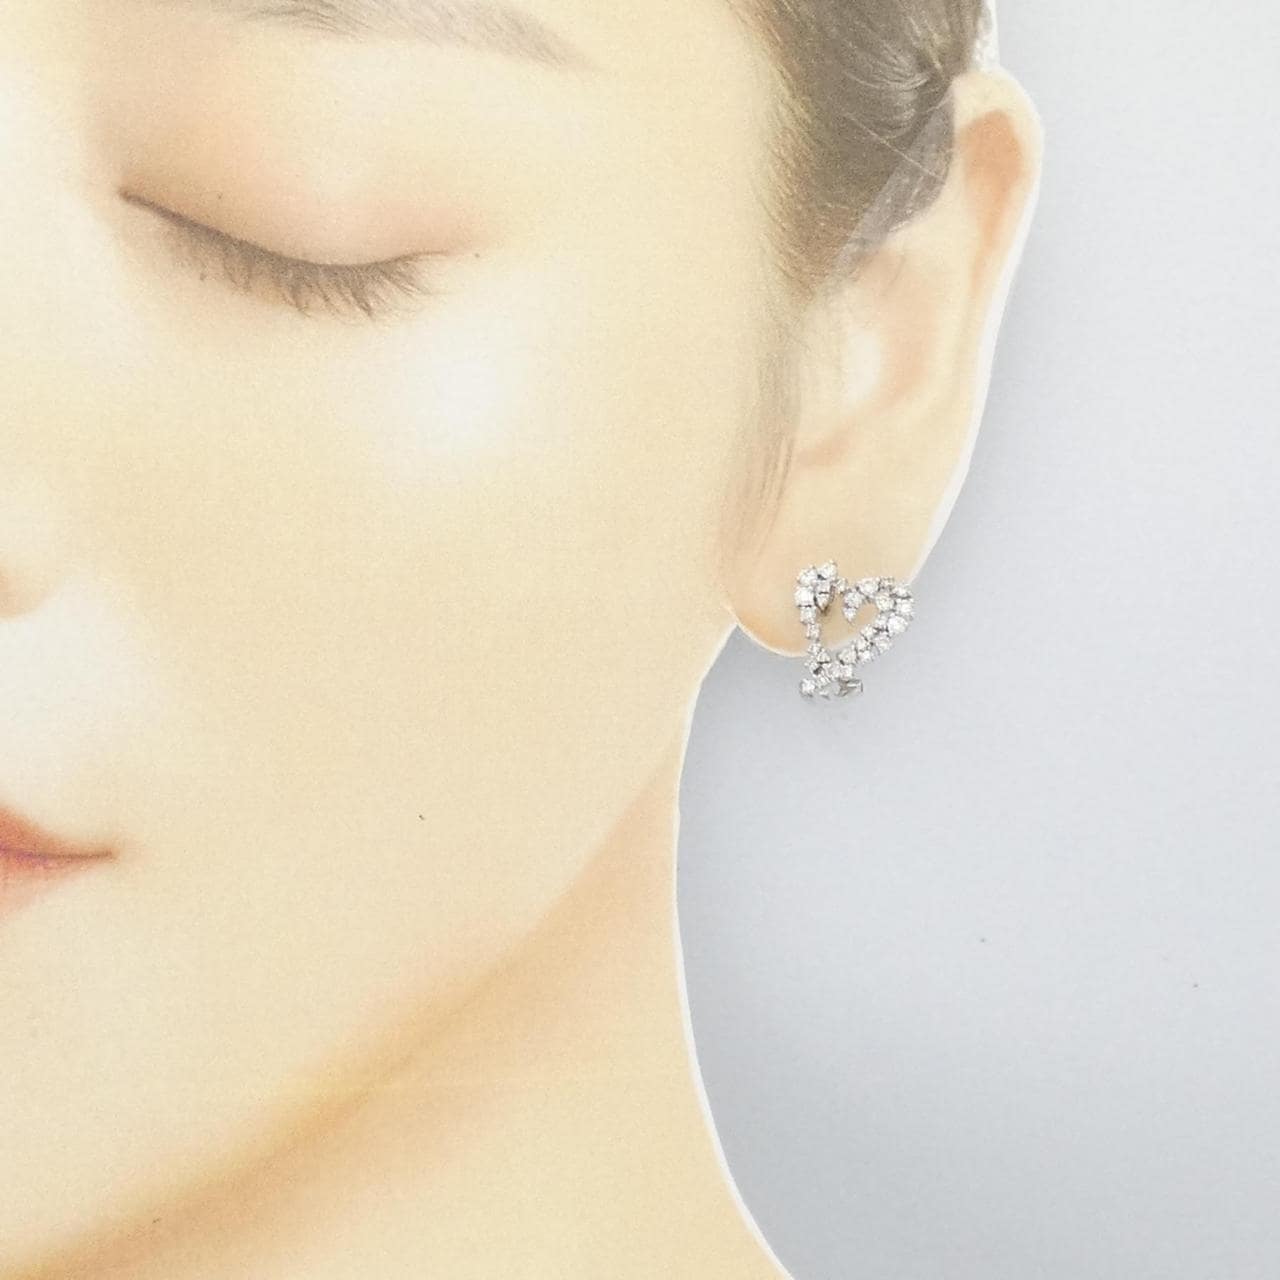 K18WG Heart Diamond Earrings/Earrings 1.00CT